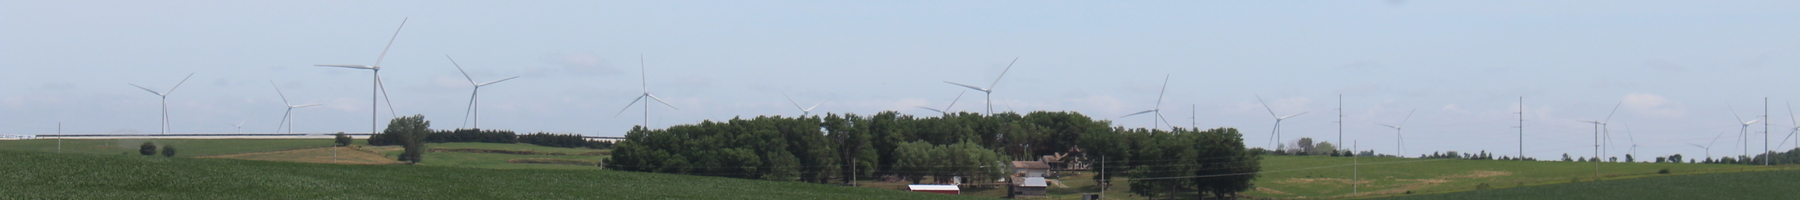 Wind farm and corn field